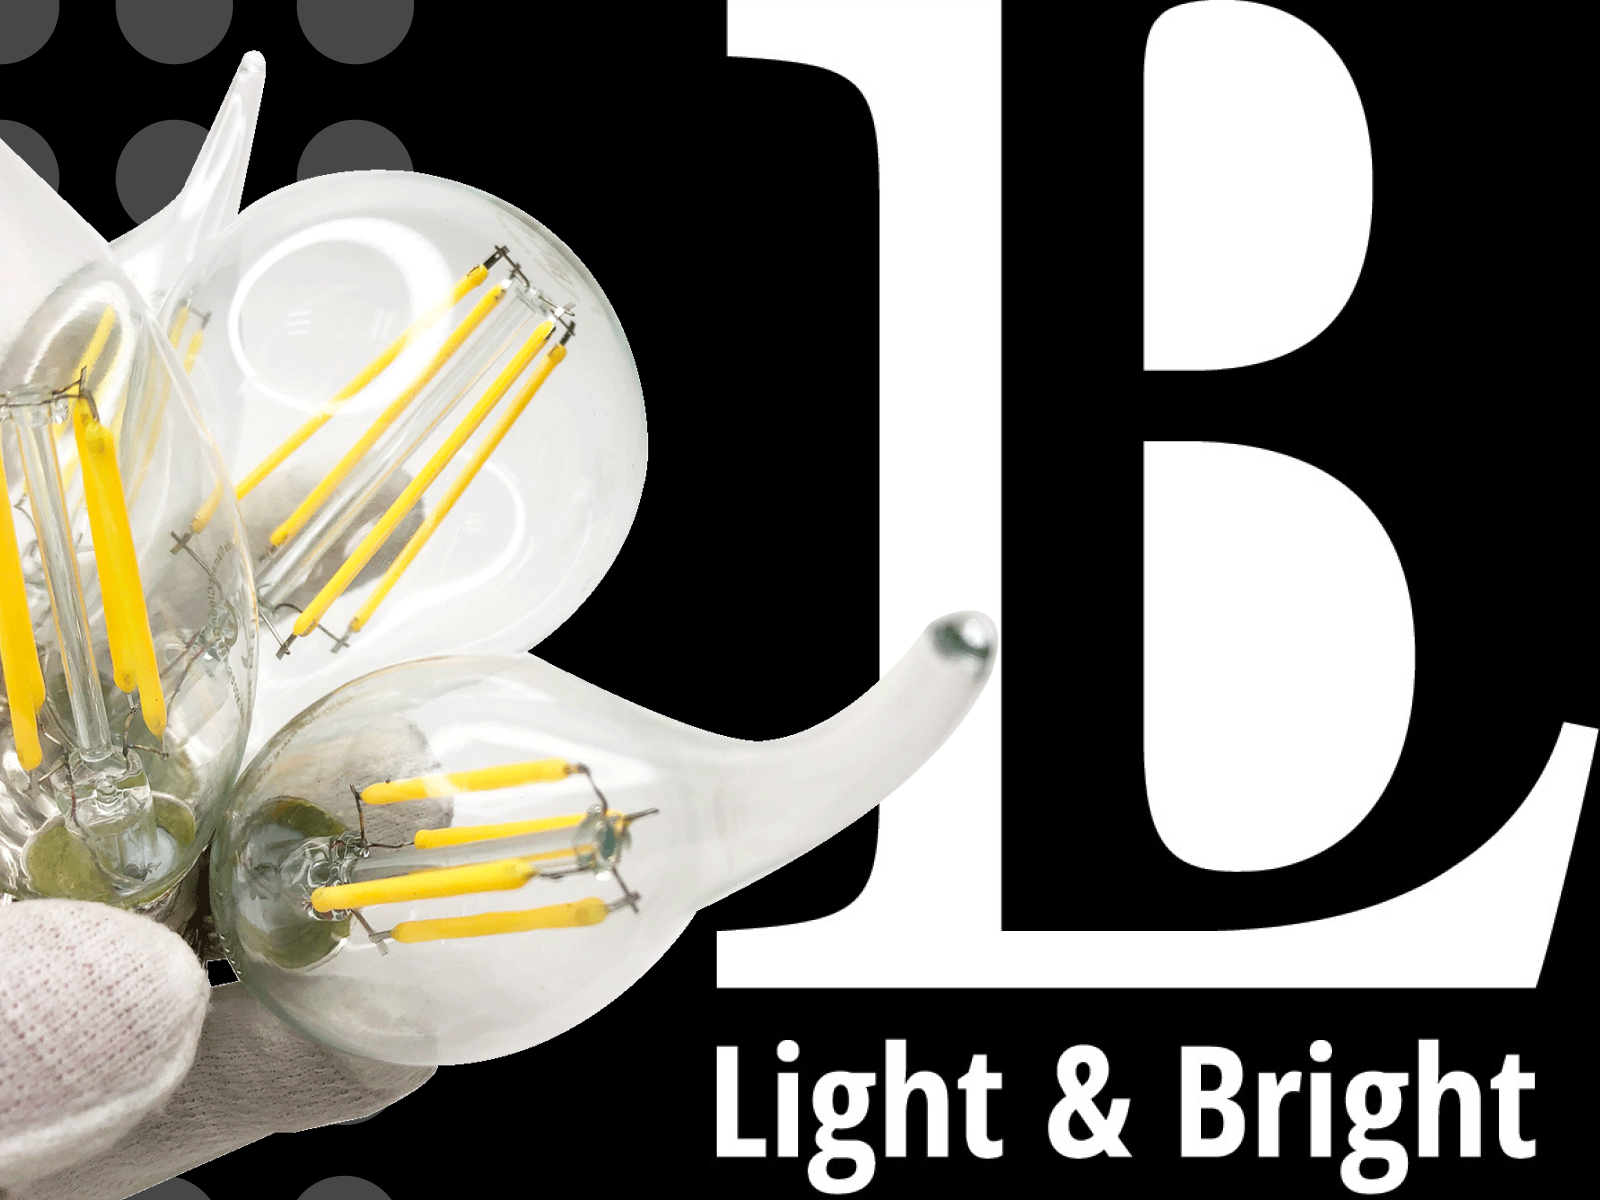 Новинка каталога - светодиодные лампы Light&Bright